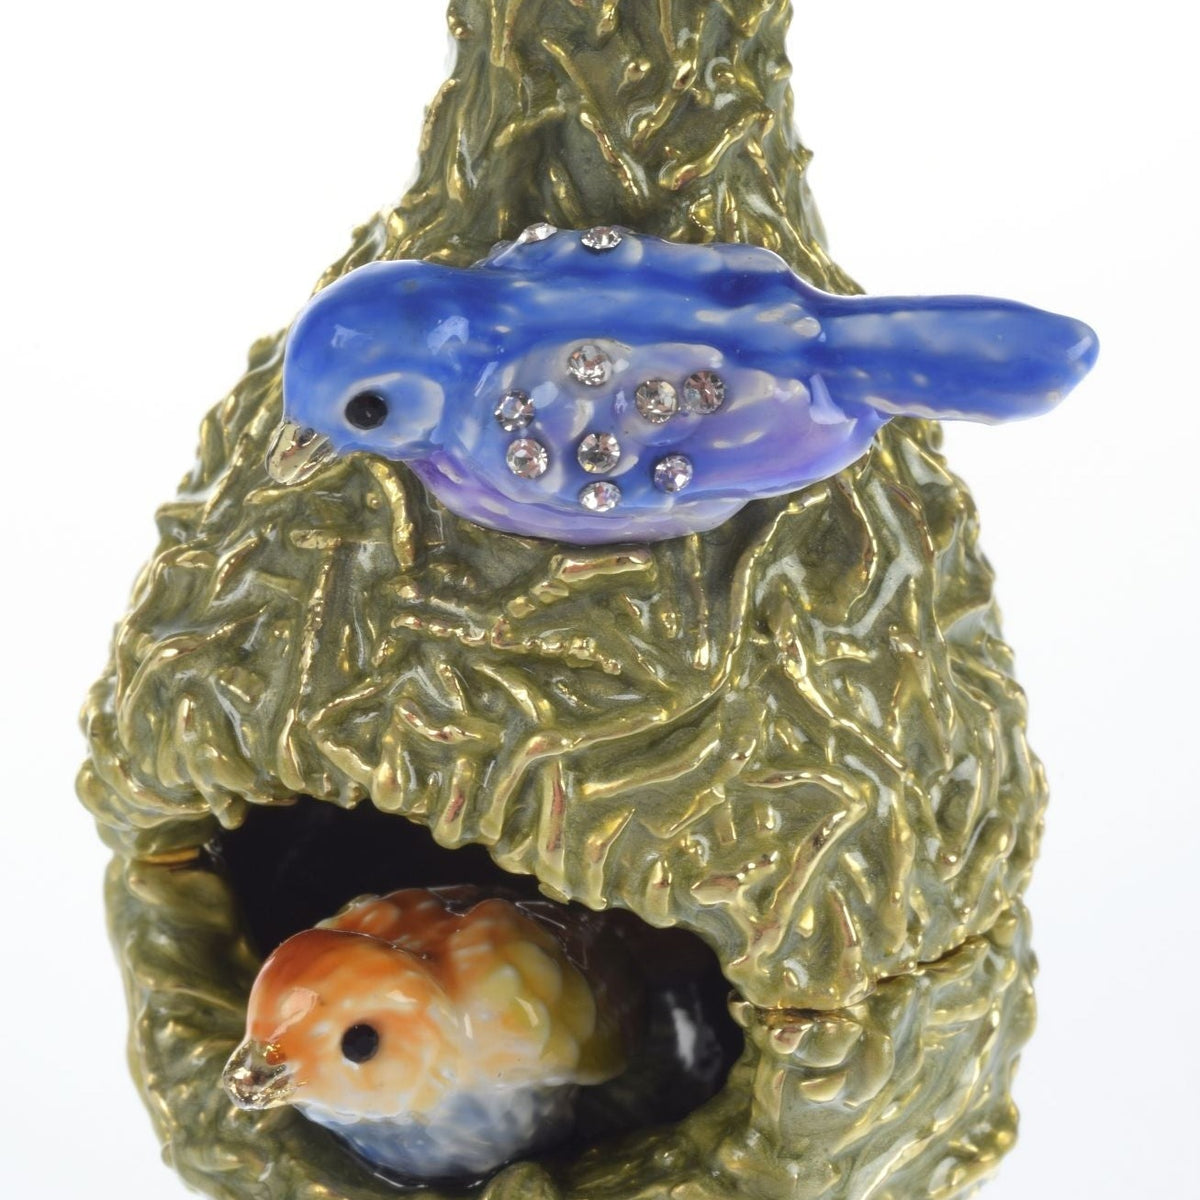 Boîte à bijoux avec deux tourtereaux dans un nid